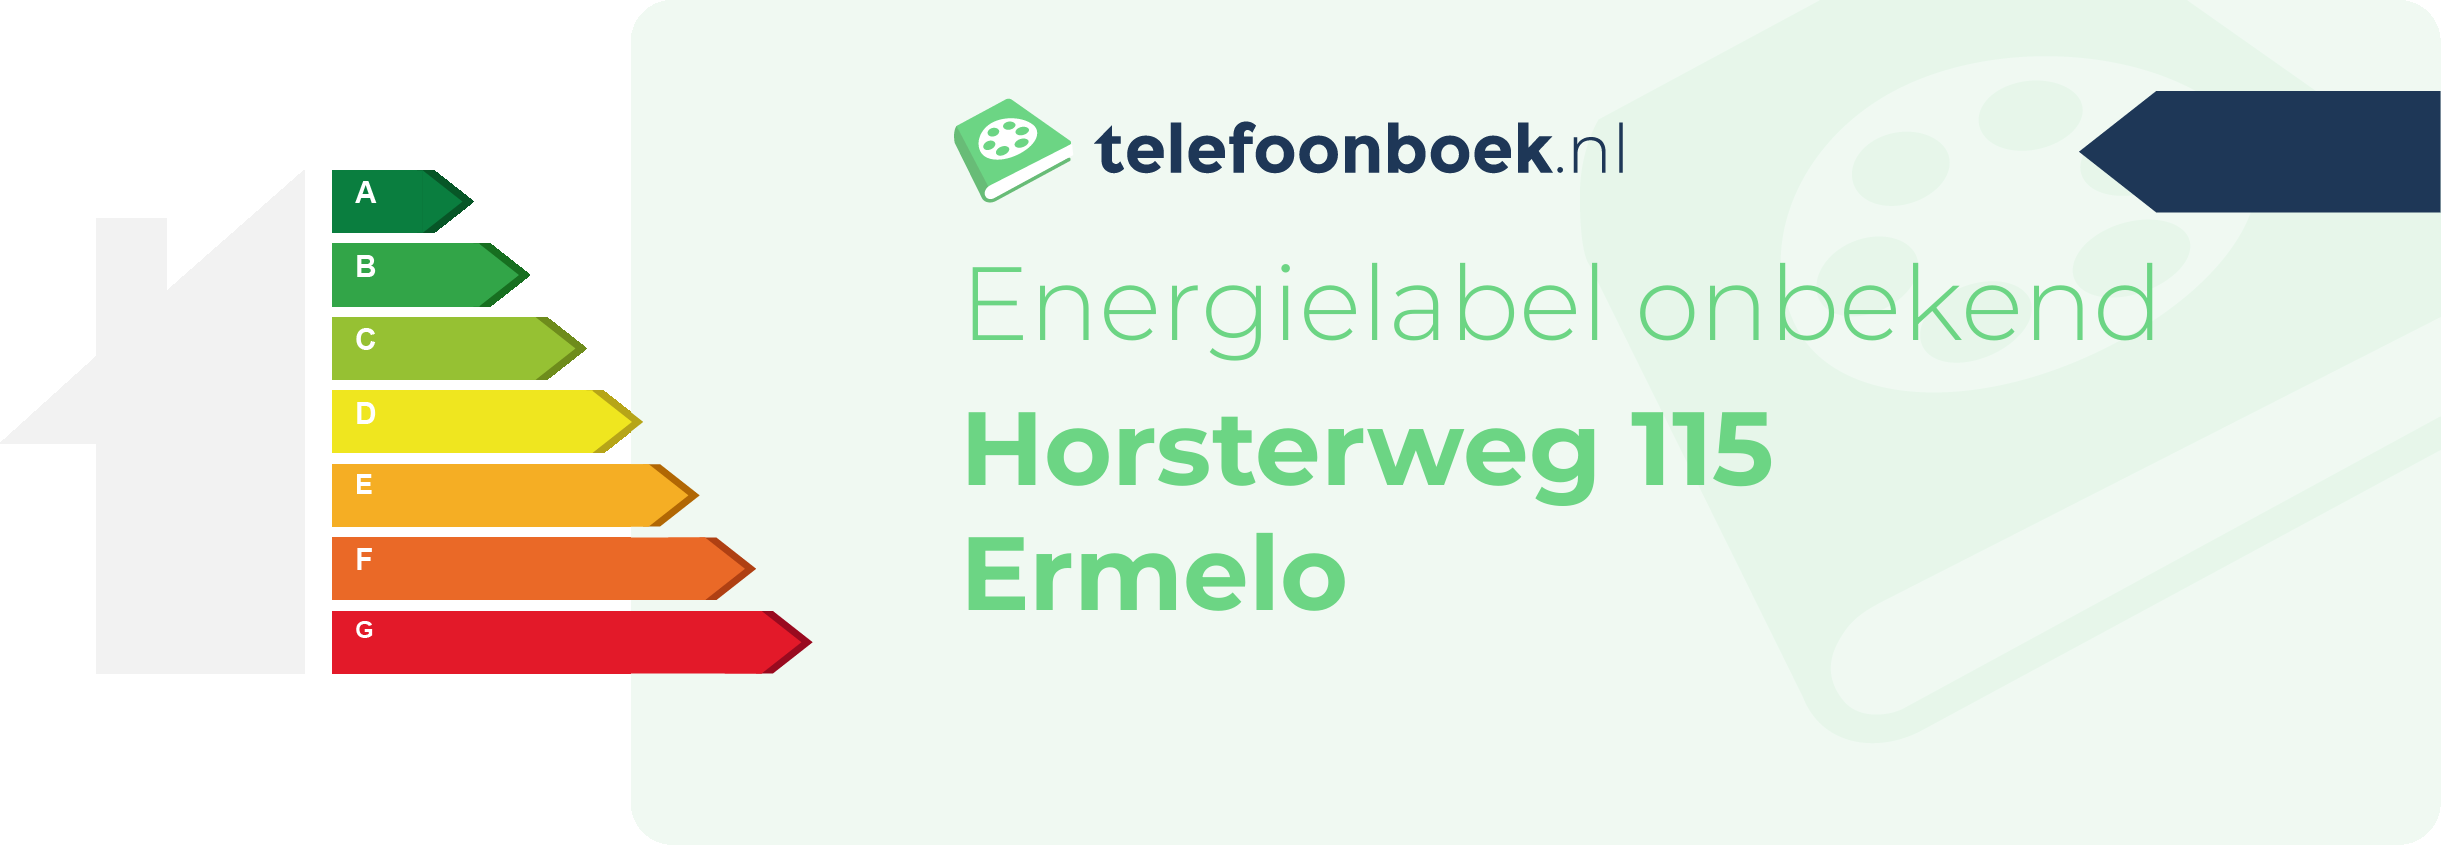 Energielabel Horsterweg 115 Ermelo